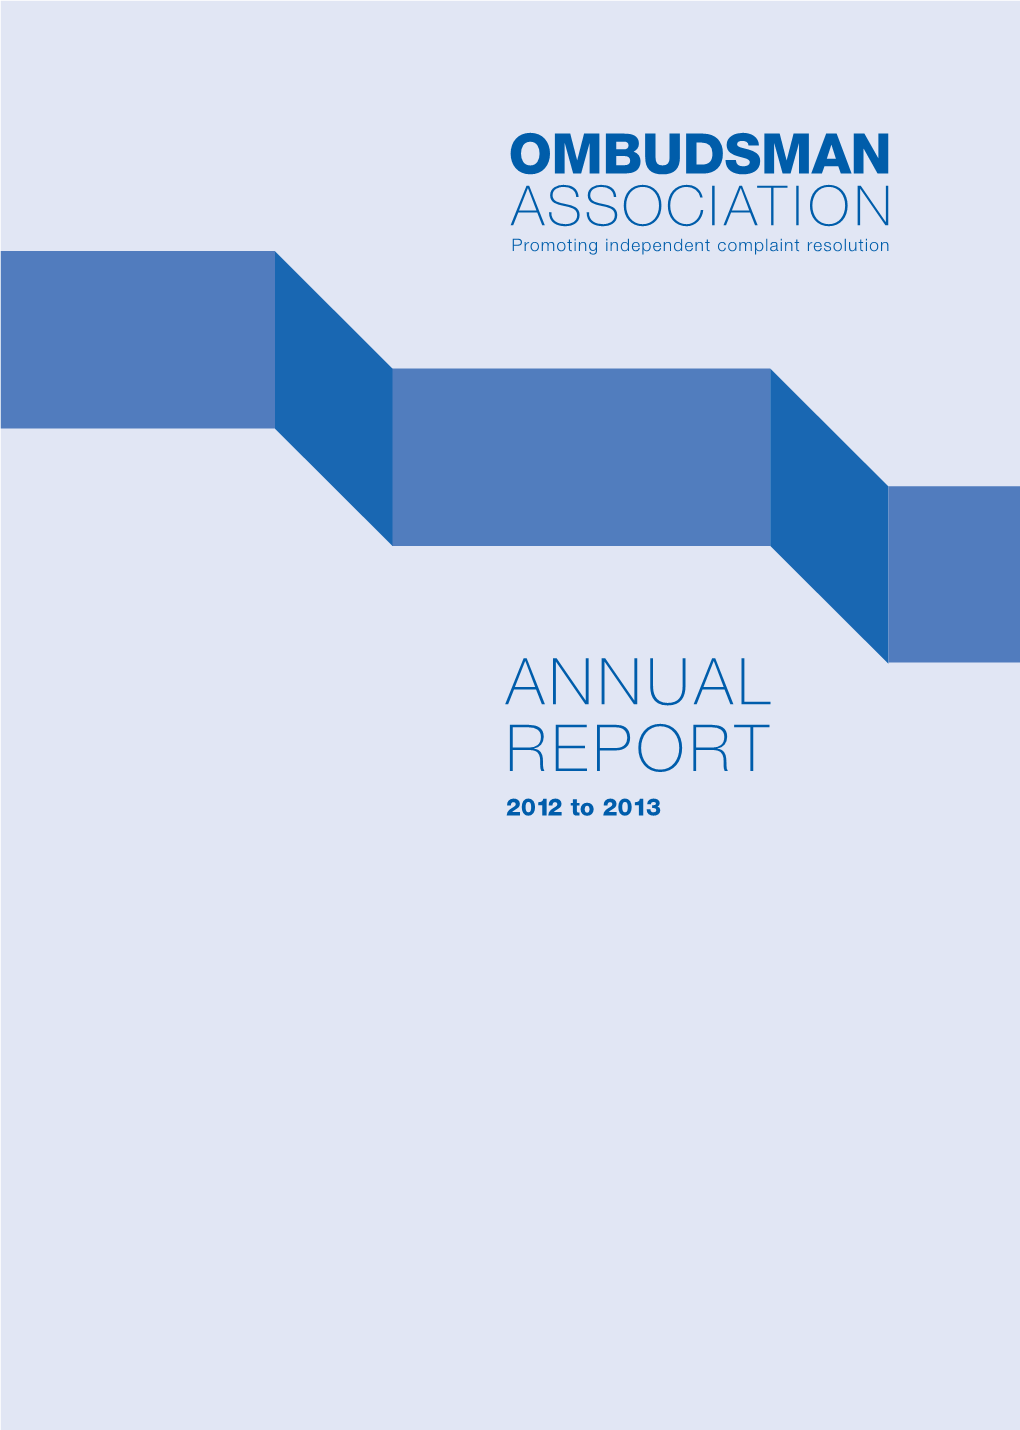 OA Annual Report 2012-2013